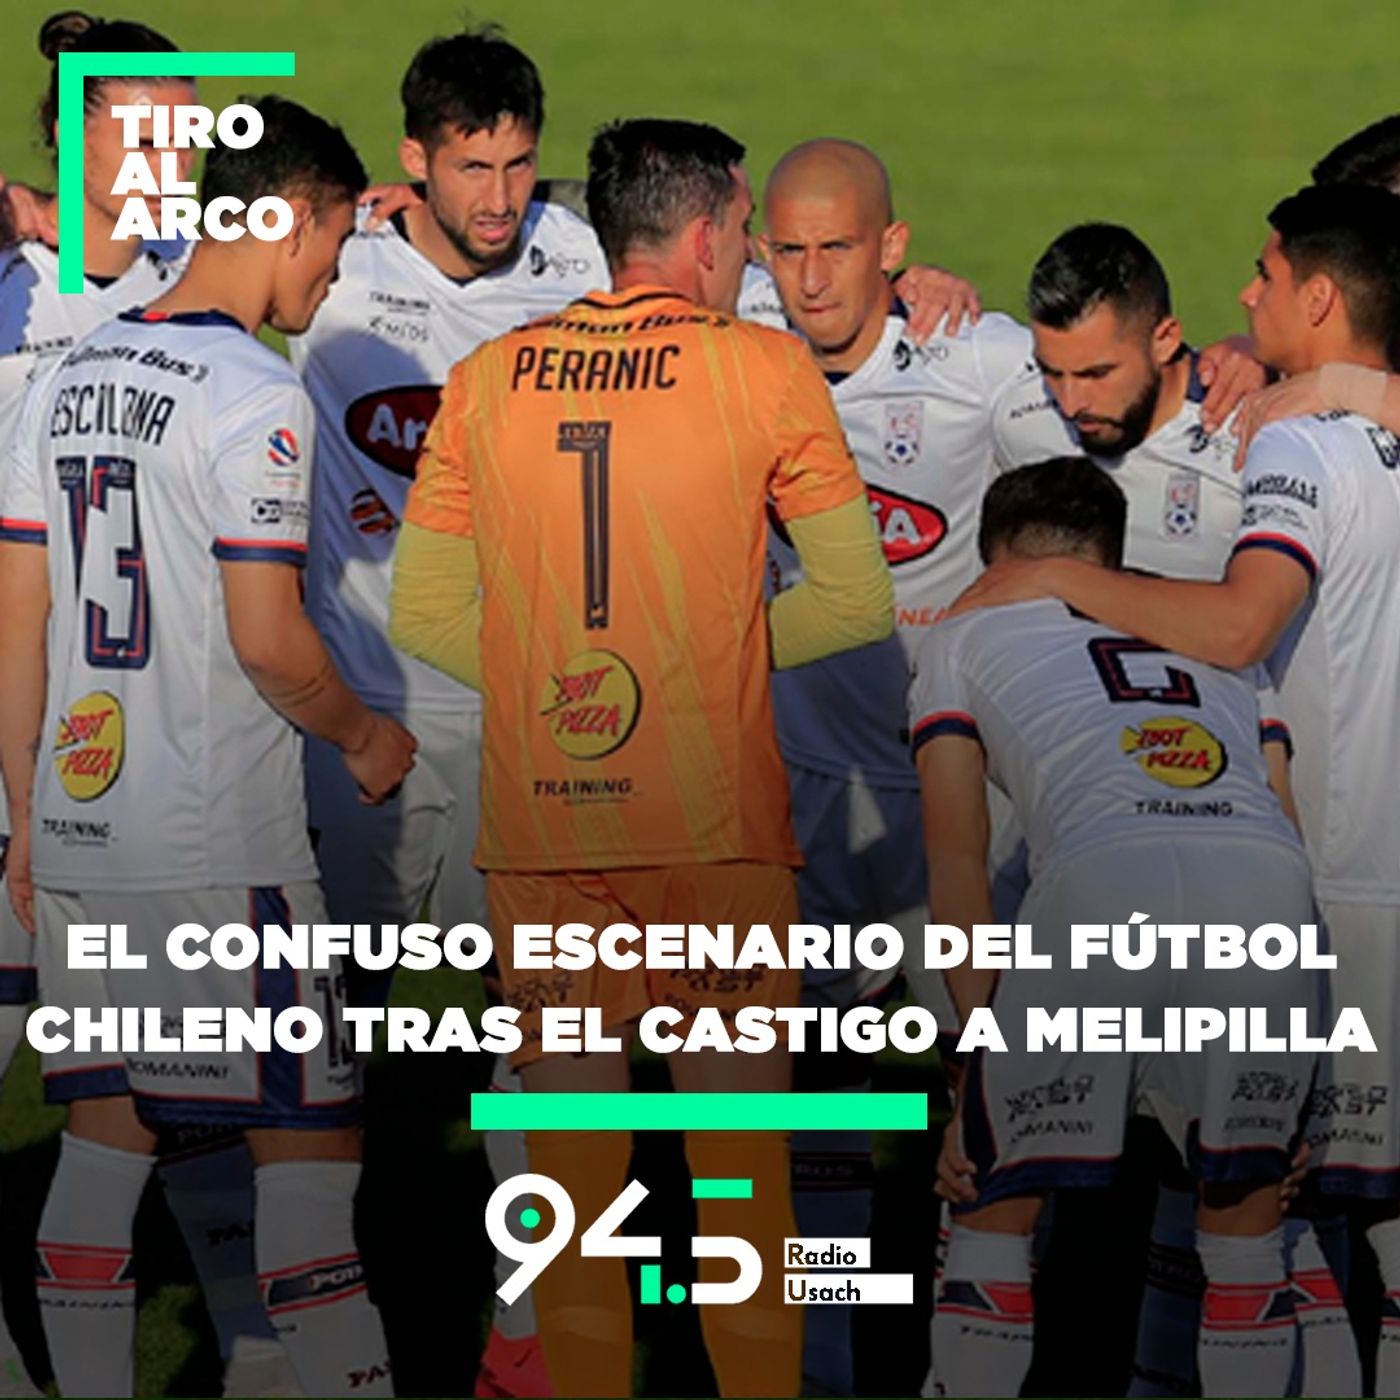 El confuso escenario del fútbol chileno tras el castigo a Melipilla